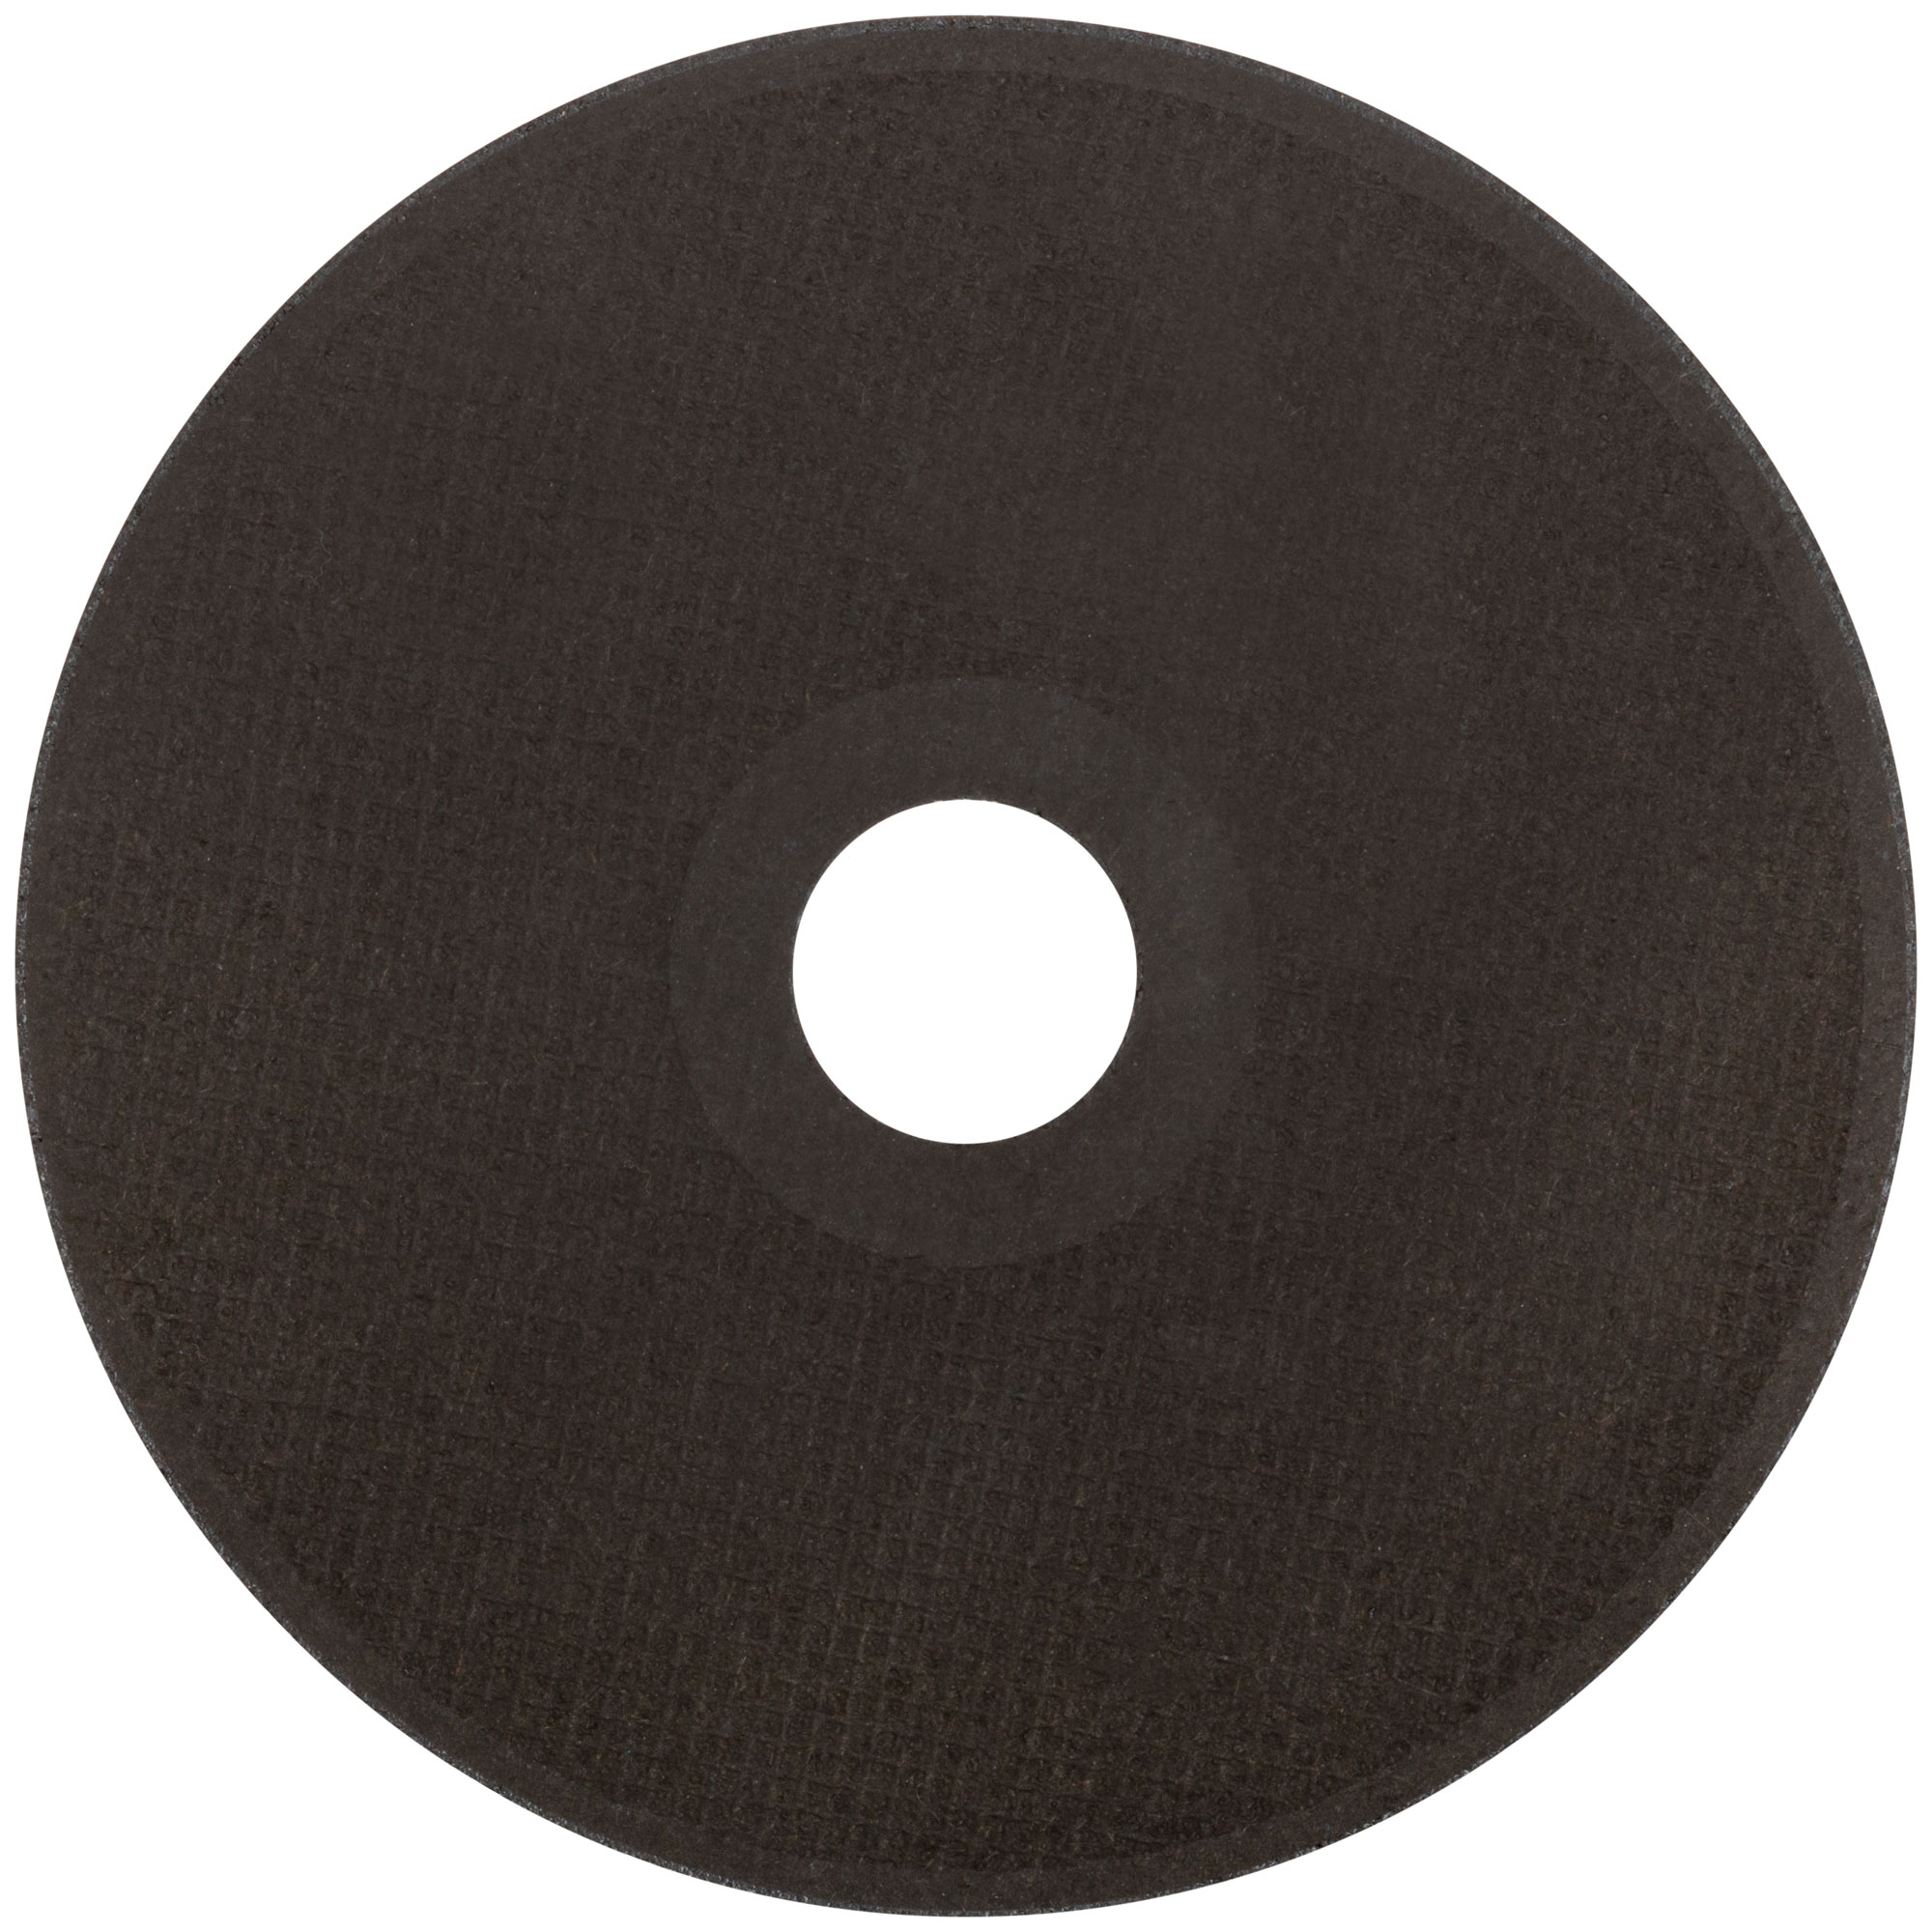 Круг отрезной по нержавеющей стали, посадочный диаметр 22,2 мм, 125x1,2 мм